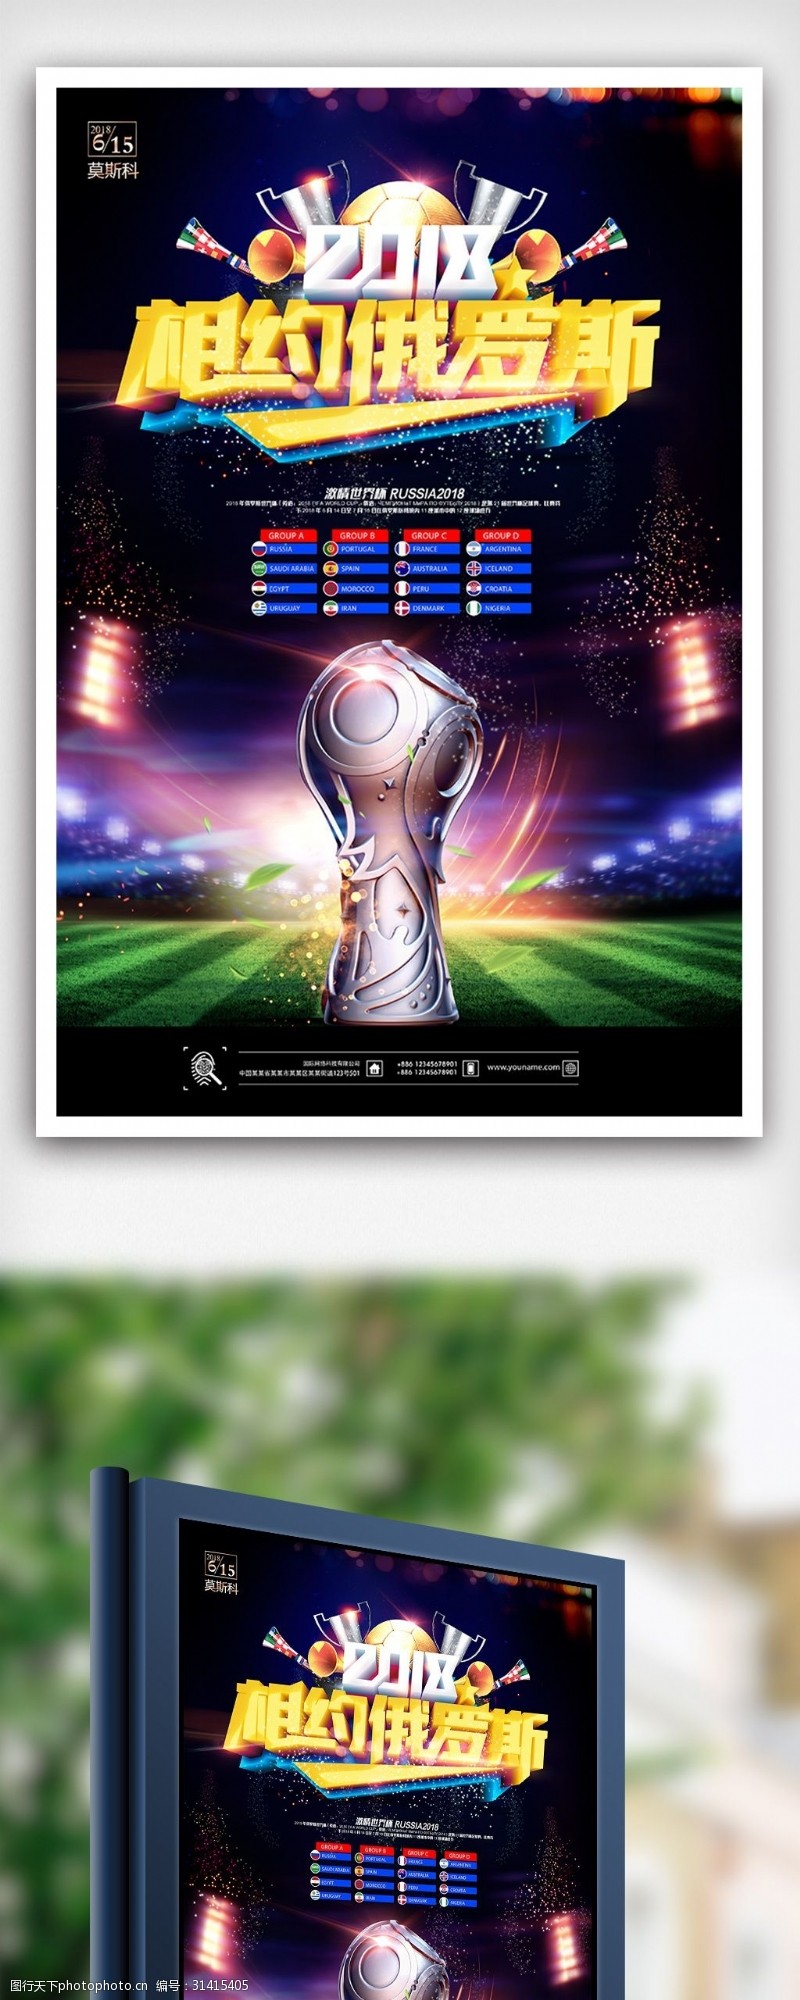 足球图片素材下载2018俄罗斯世界杯足球赛海报